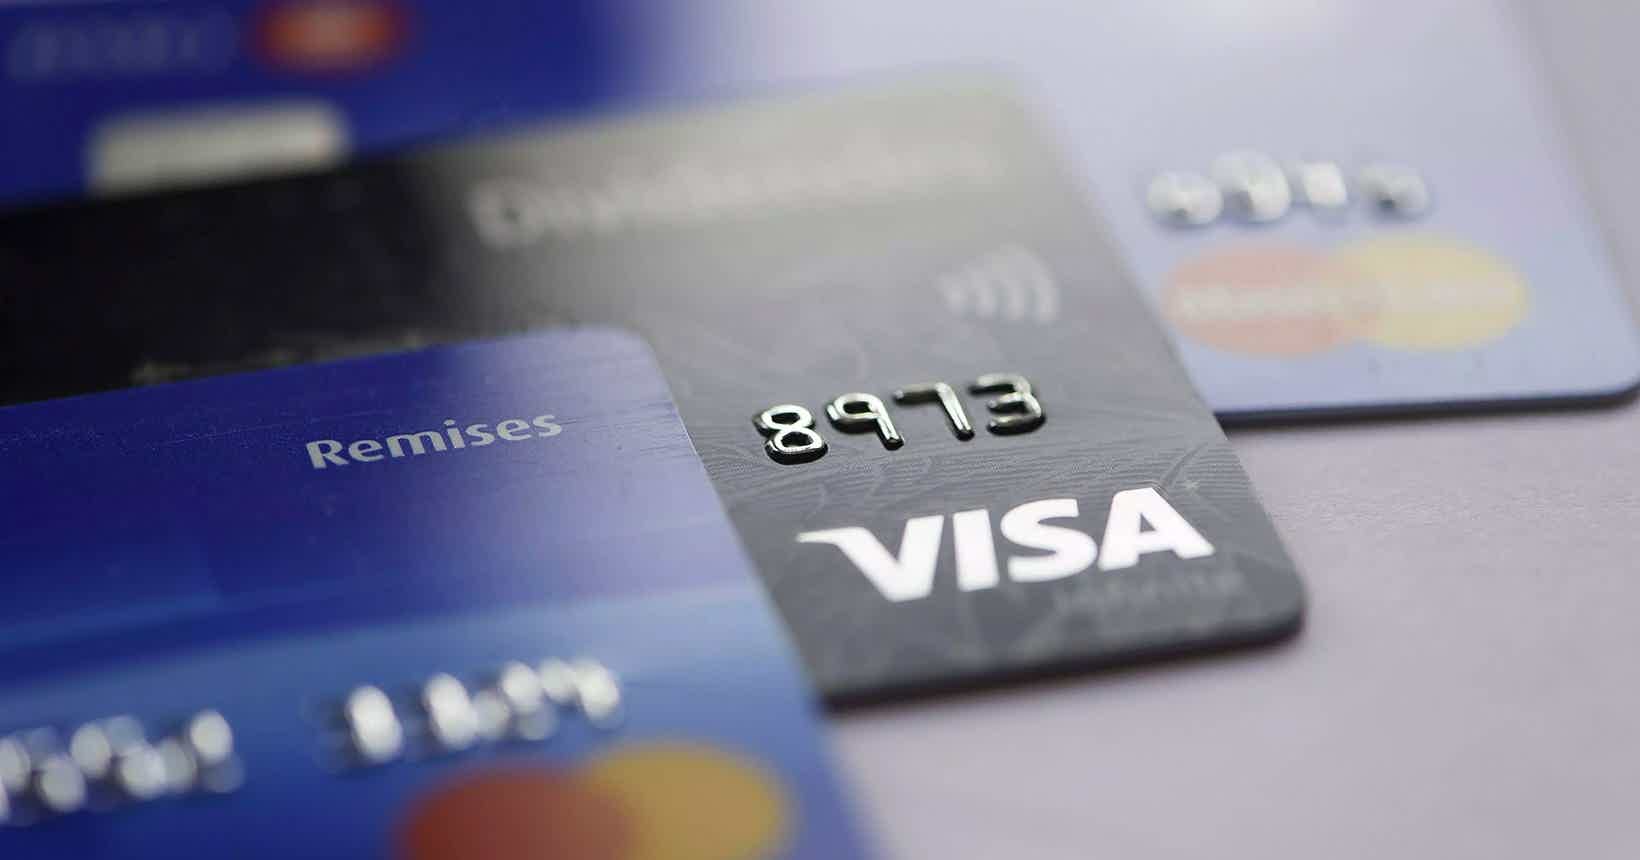 Cartão de crédito Caixa Visa Platinum